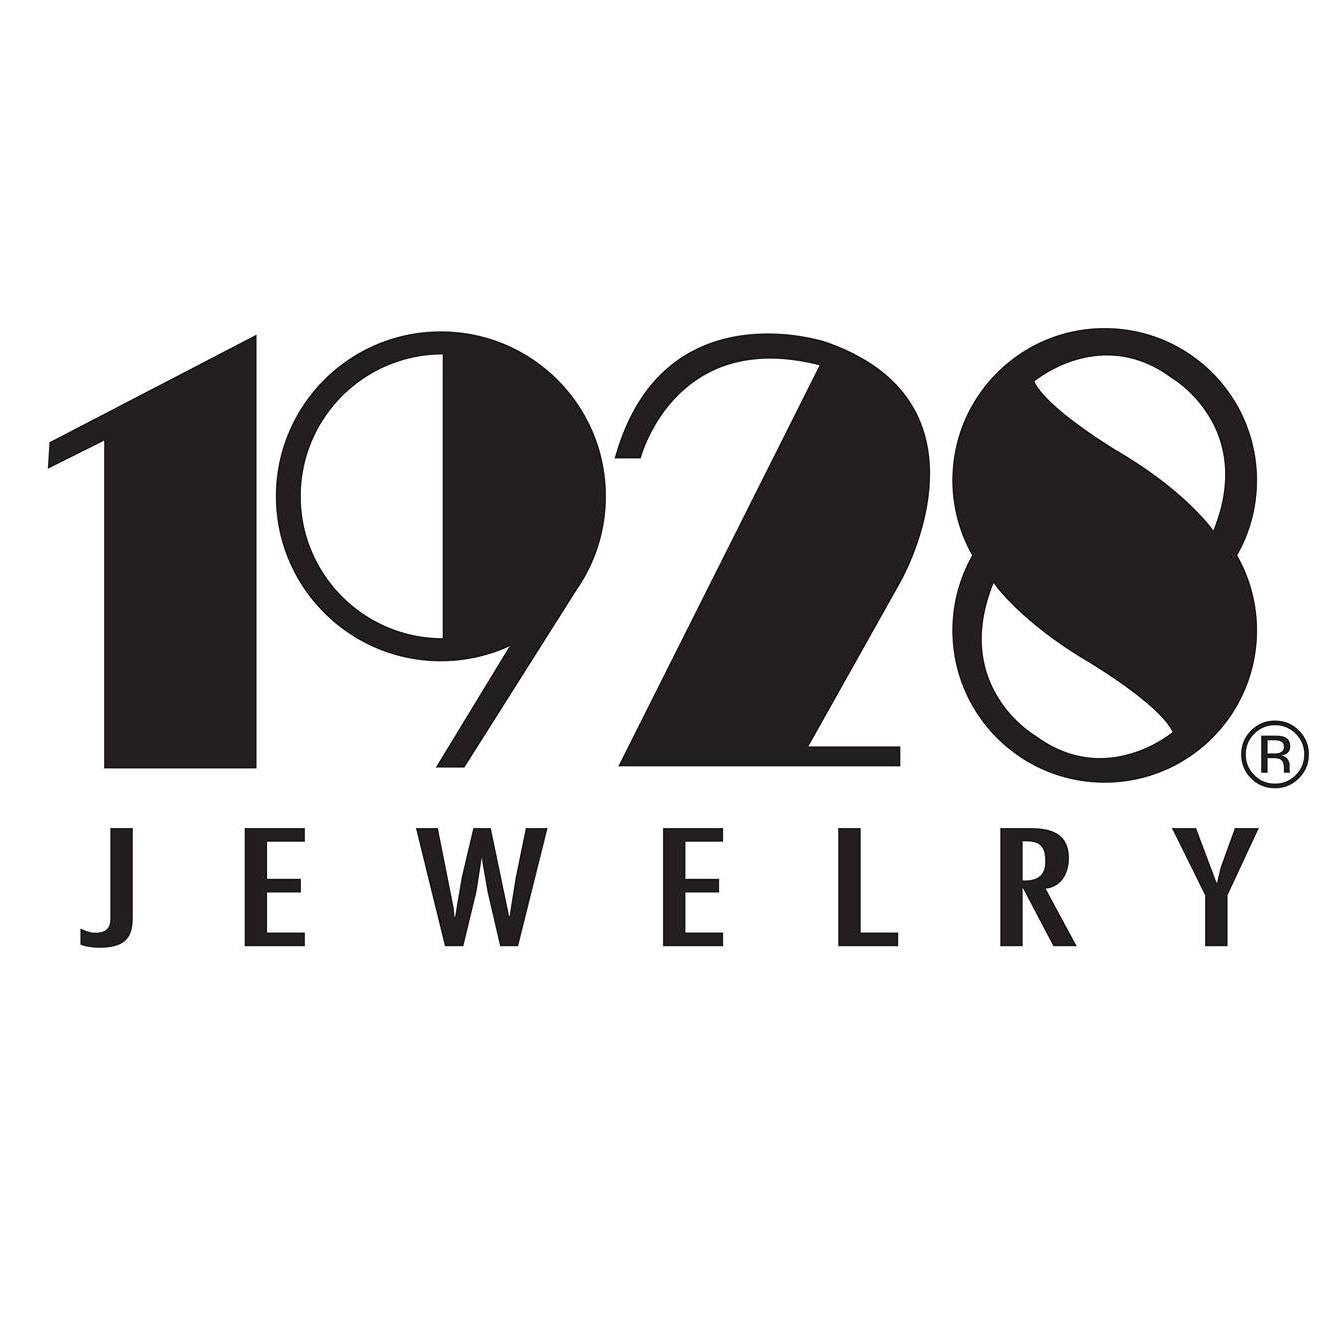 Company logo of 1928 Jewelry Company